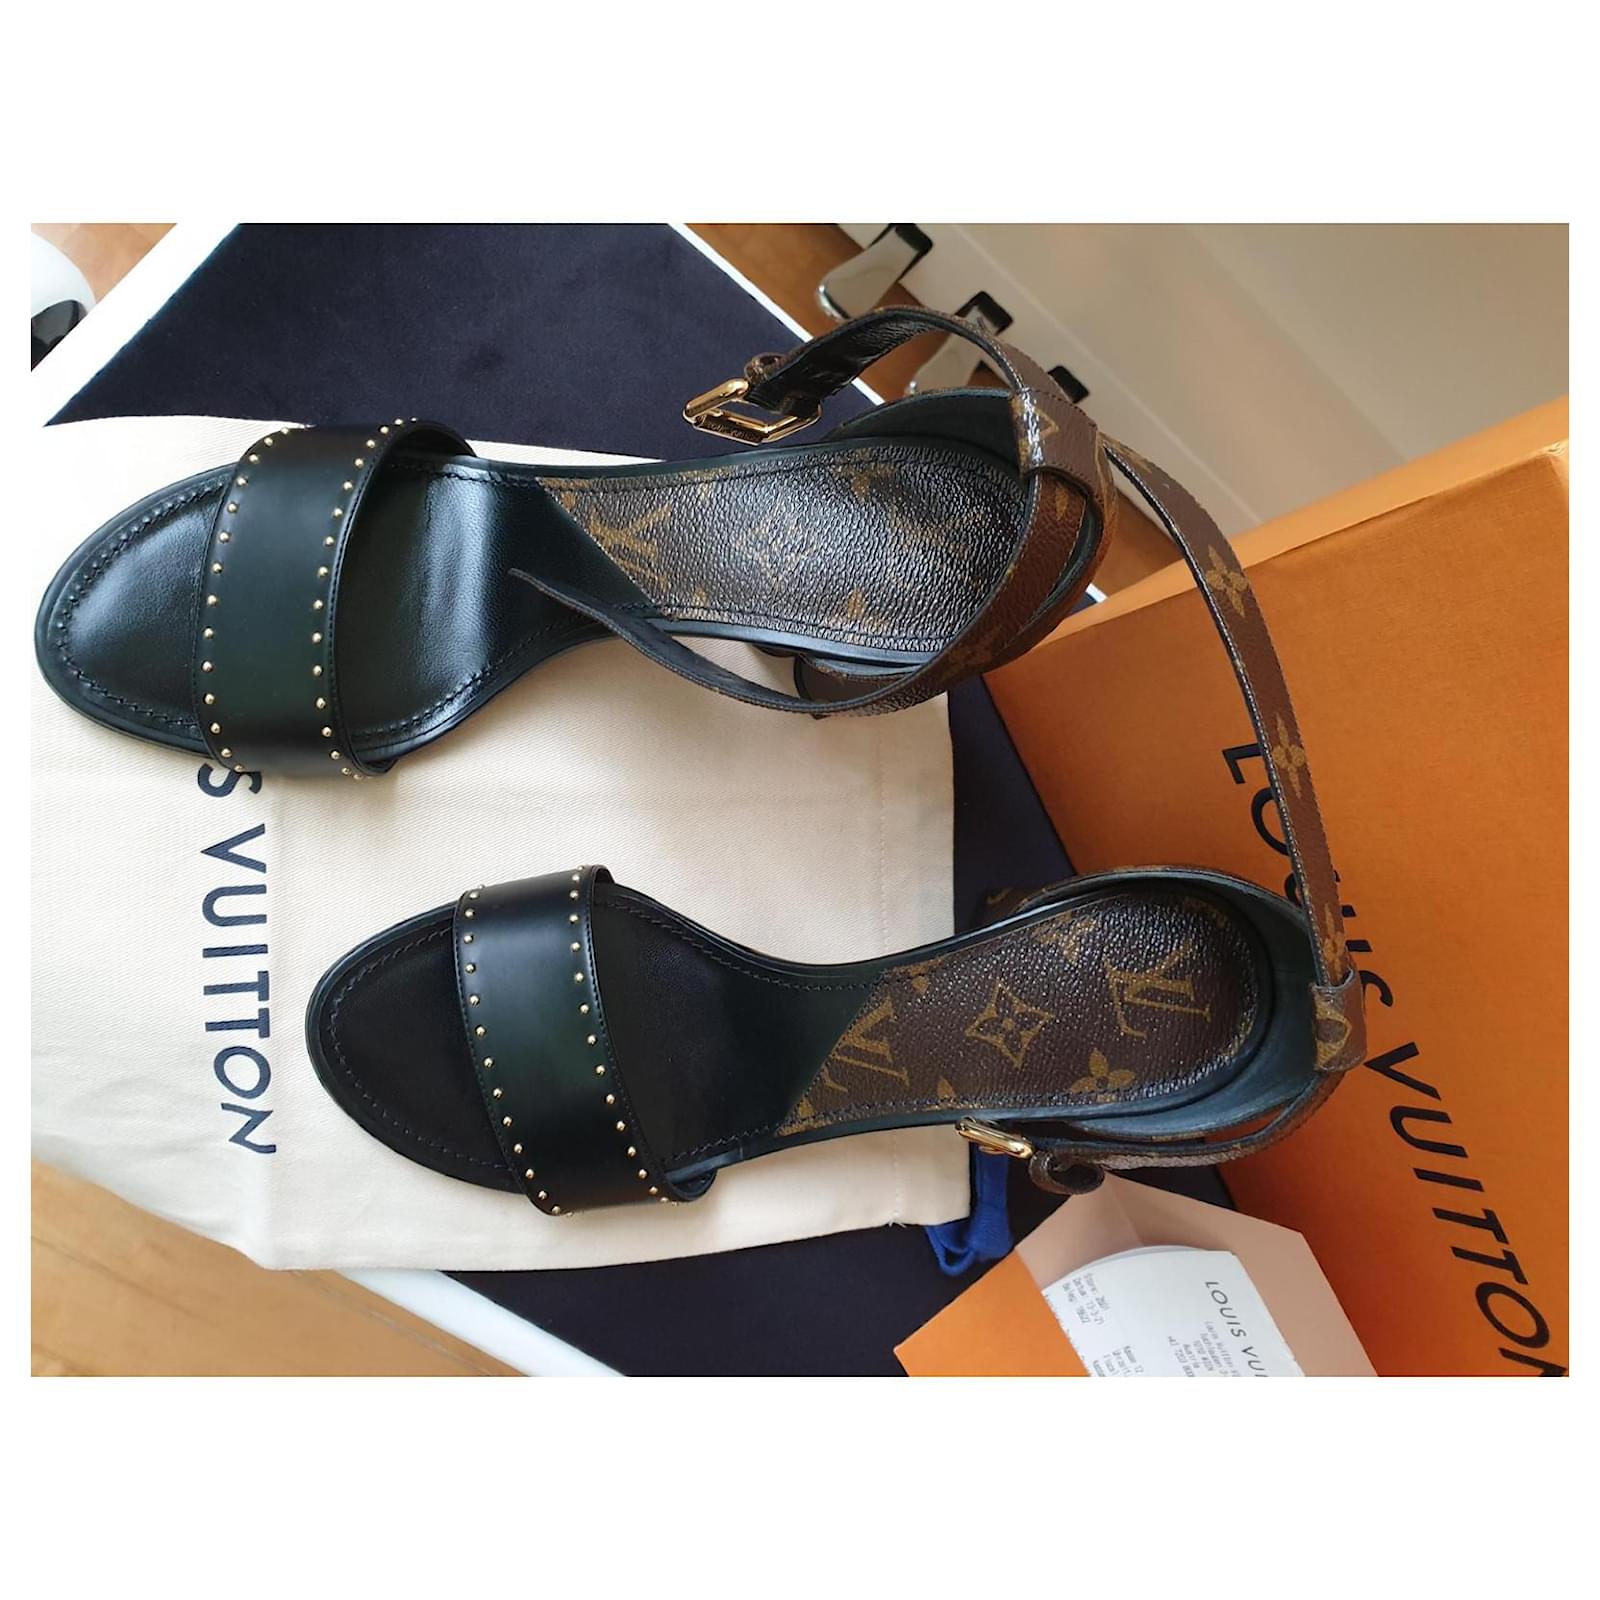 Louis Vuitton Nomad Flat Sandals